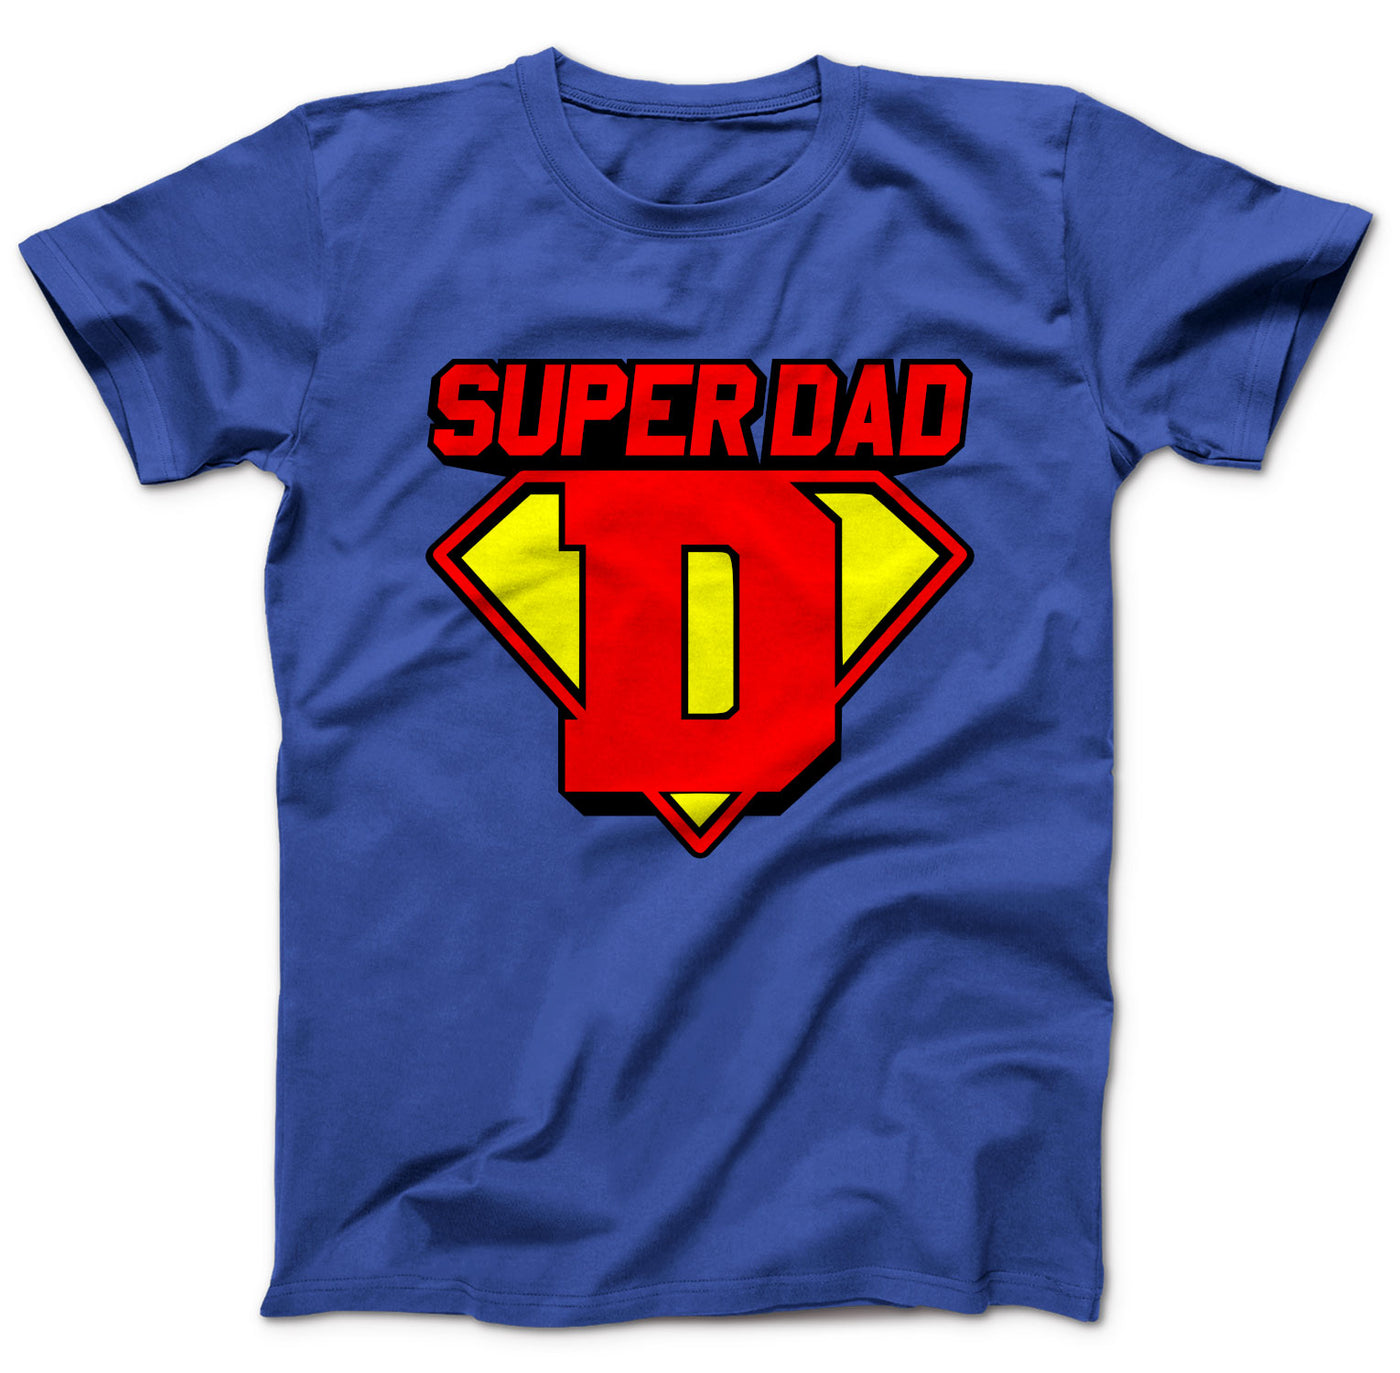 super-dad-shirt-blau-dd132mts